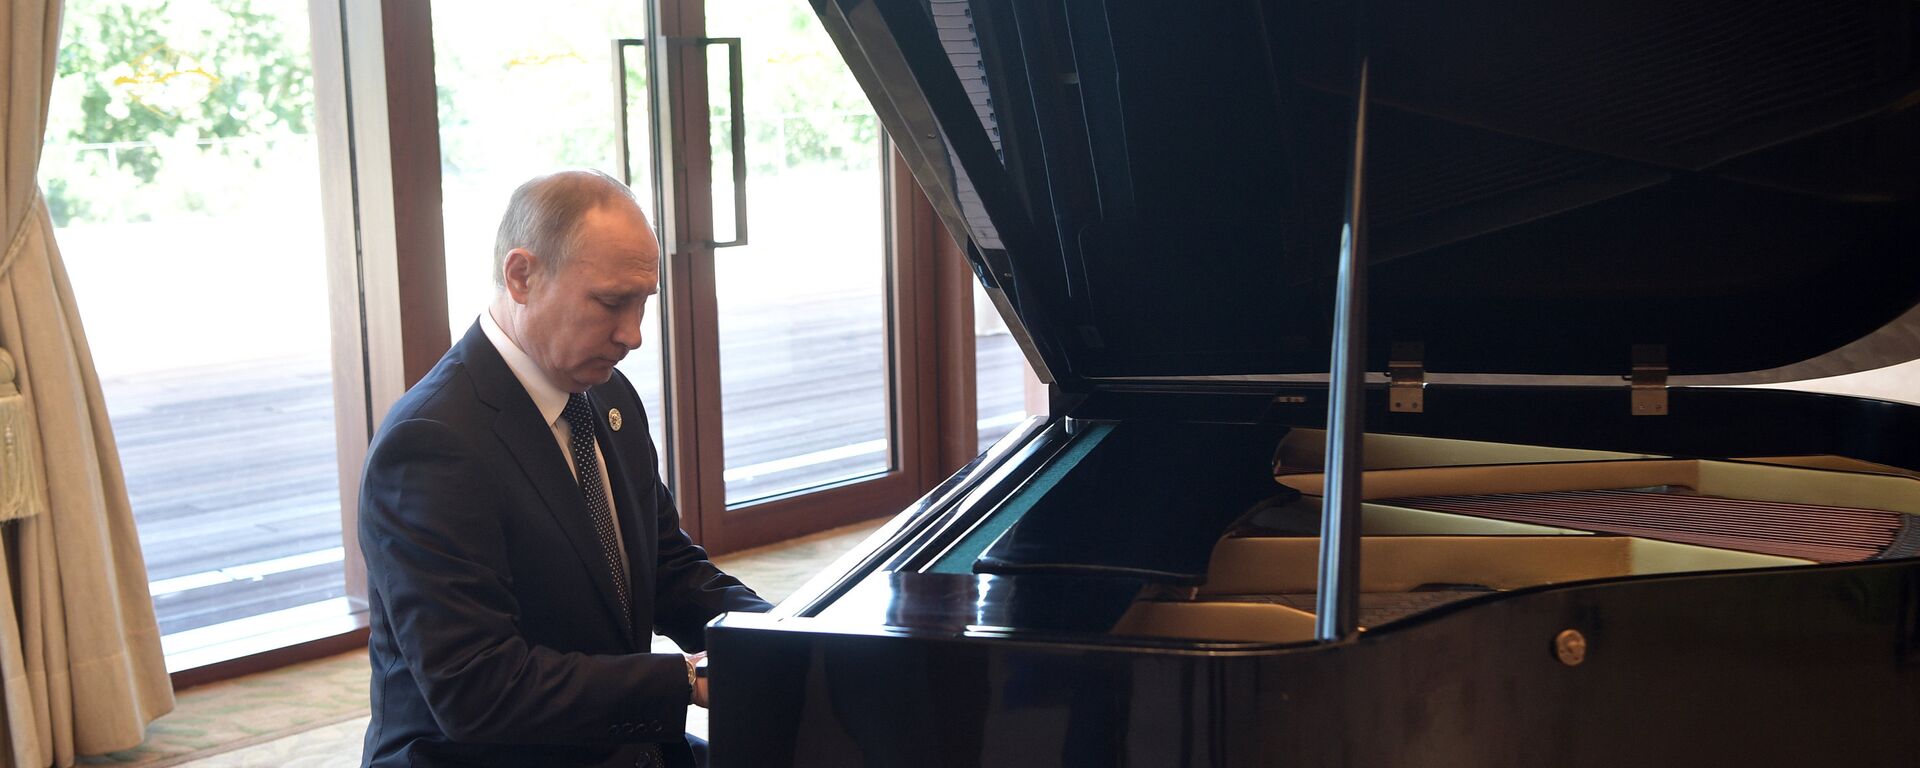 Руски председник Владимир Путин свира клавир - Sputnik Србија, 1920, 17.07.2021